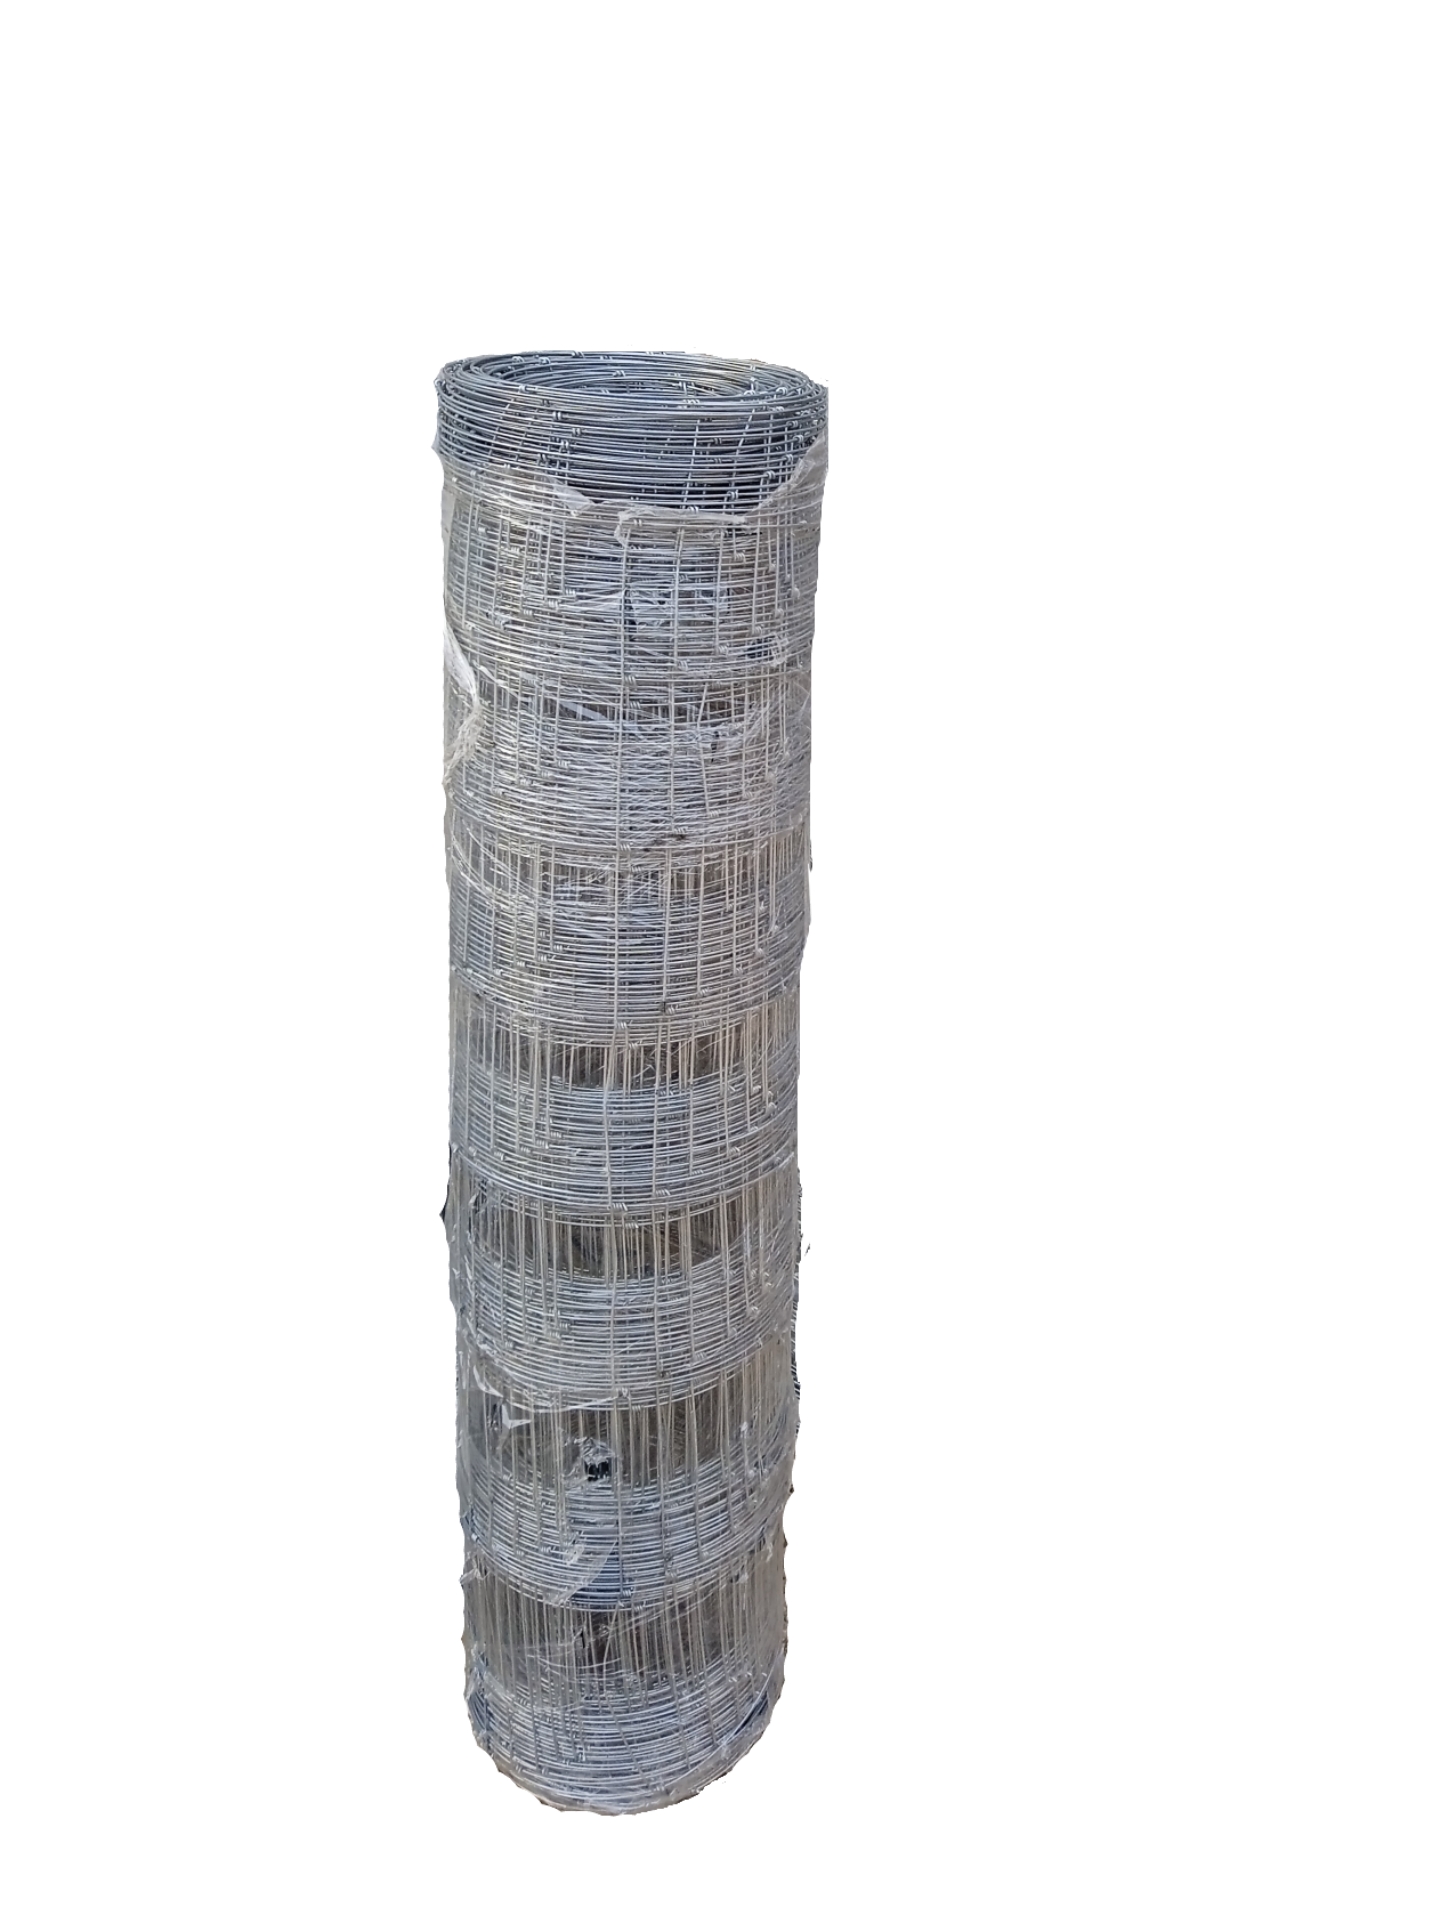 Malla ganadera., En #Renfer contamos con mallas fabricadas con alambre  galvanizado de bajo contenido de carbono. 💪👍 Ideales en la construcción  de cercos para ganado y